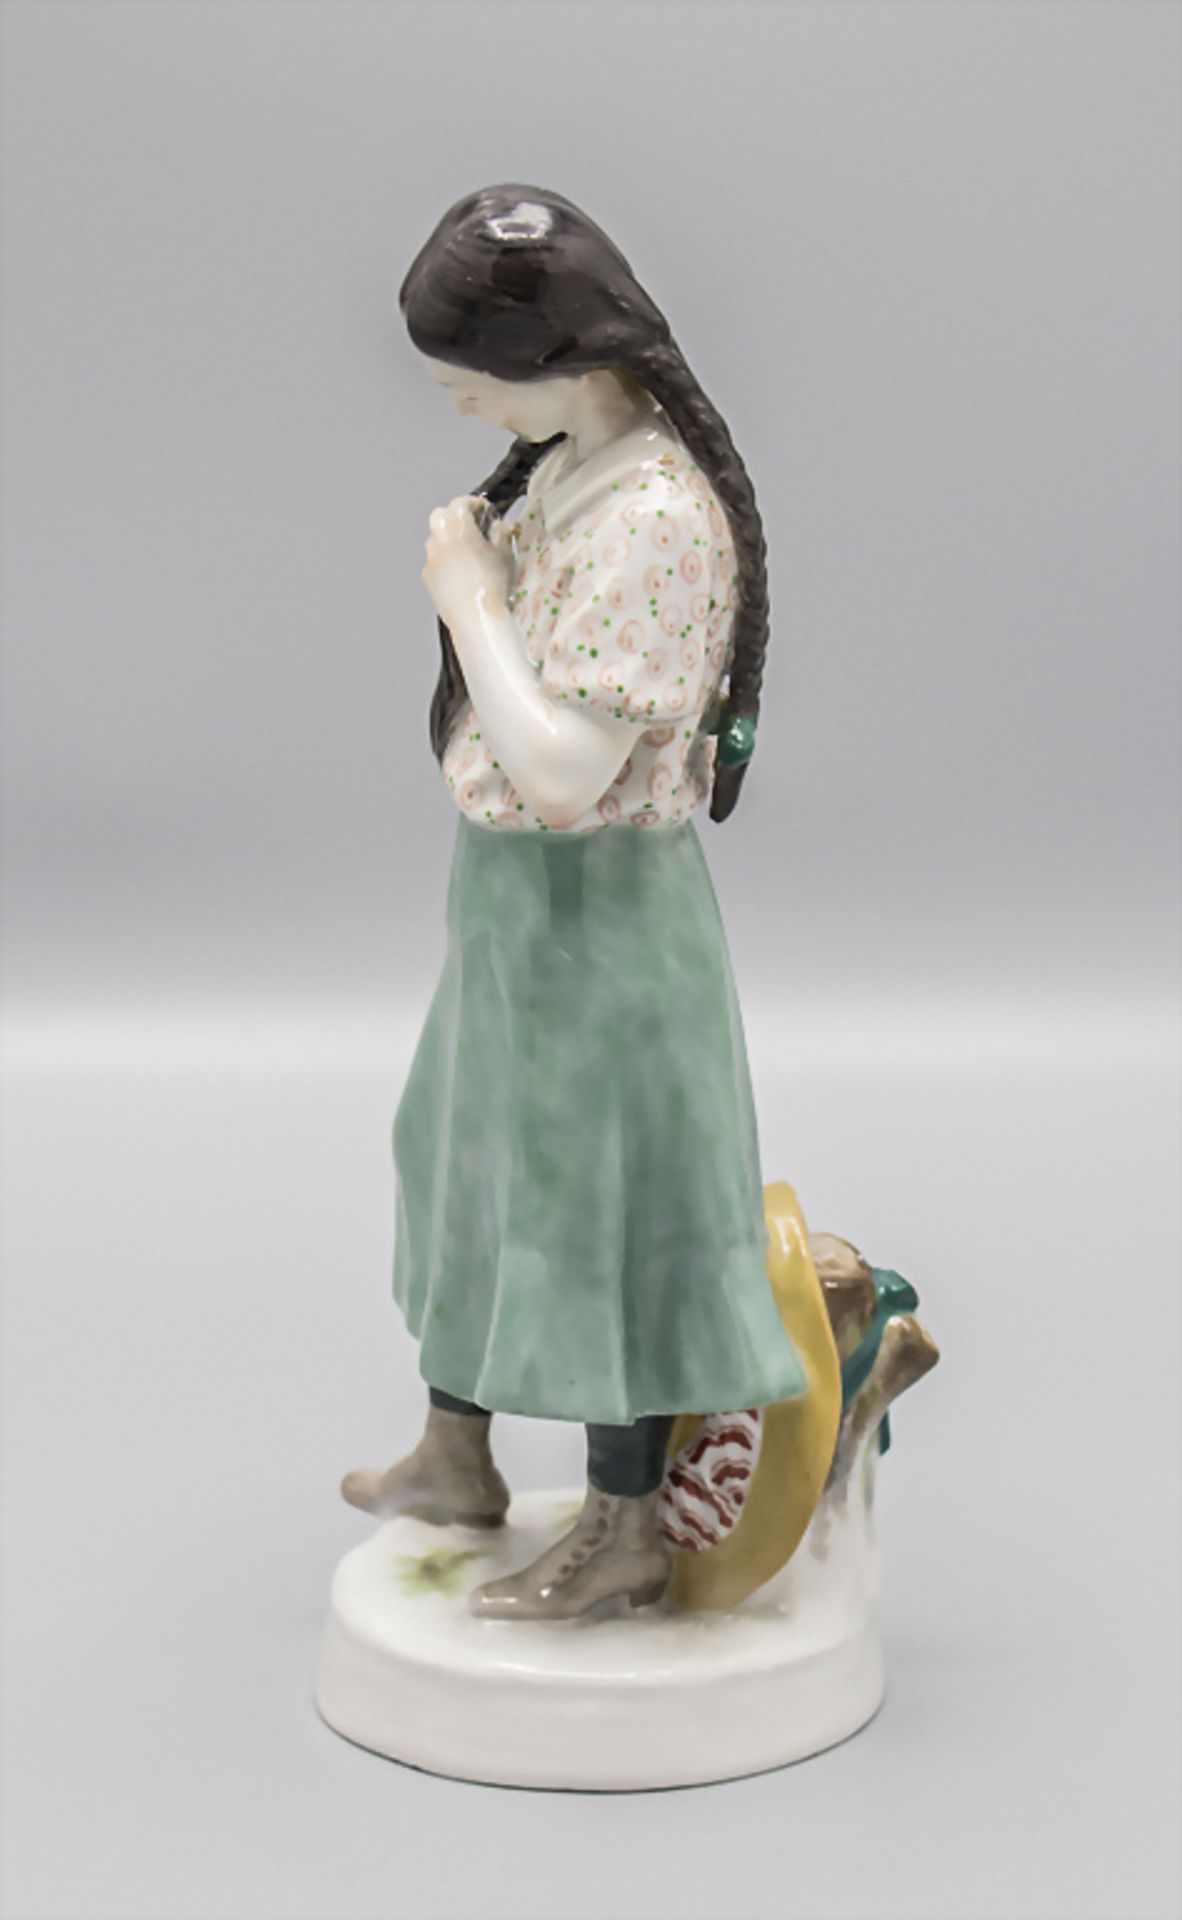 Jugendstil Figur 'Mädchen mit langen Zöpfen' / An Art Nouveau figure of a girl with long ... - Bild 3 aus 7